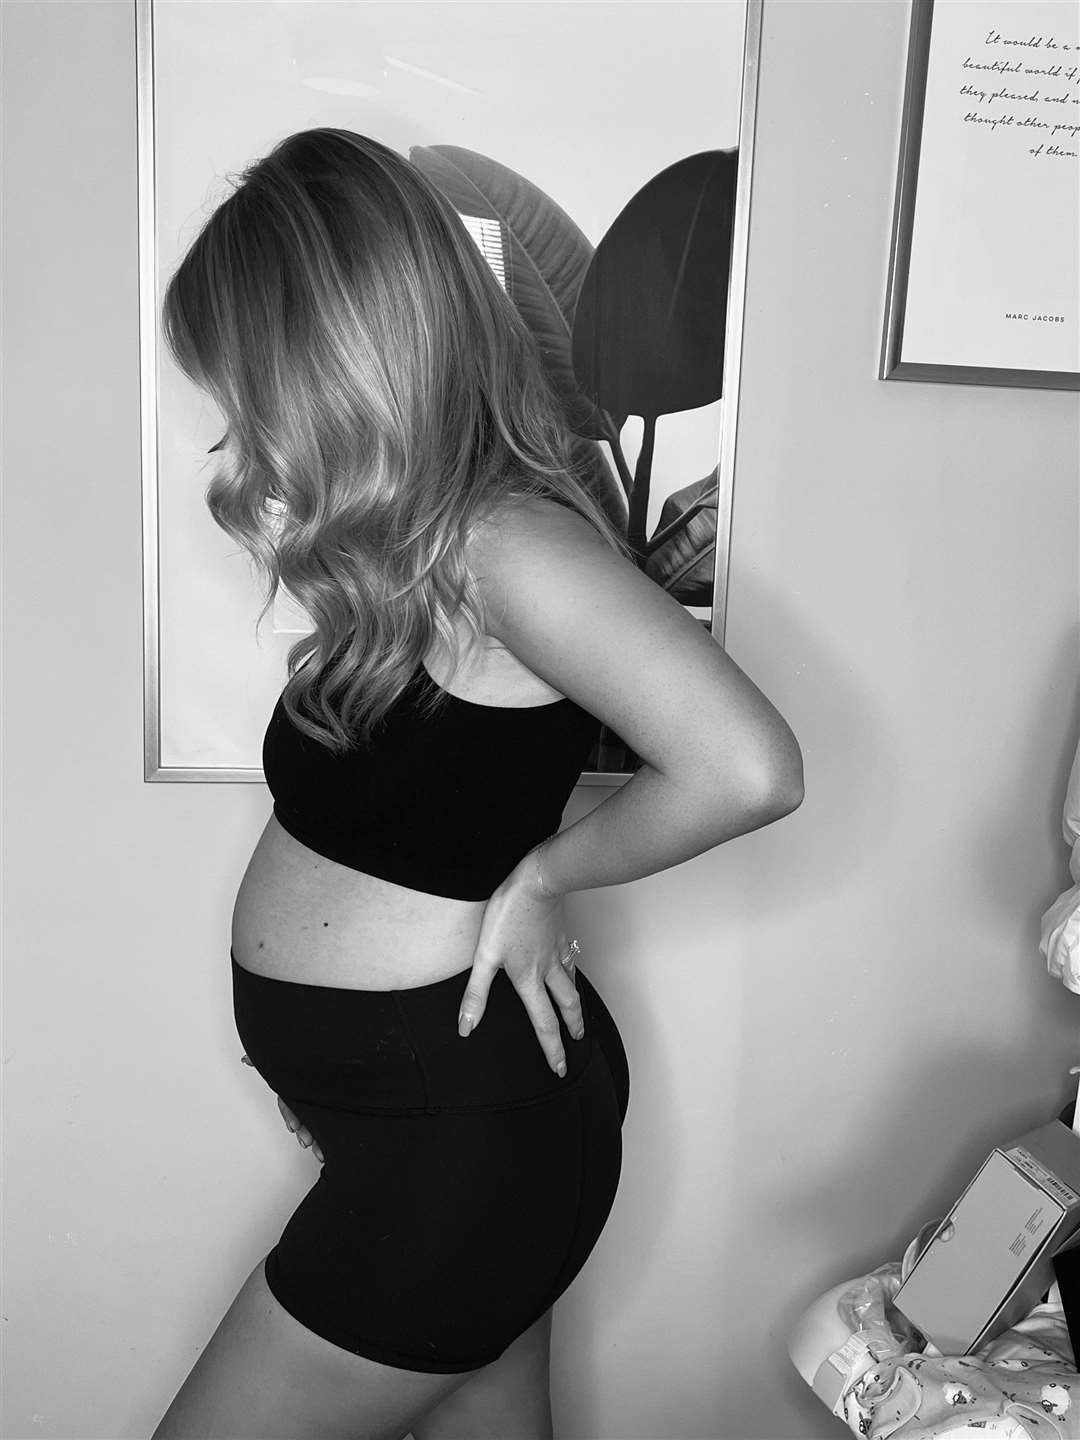 Diane Knox at 20 weeks pregnant.